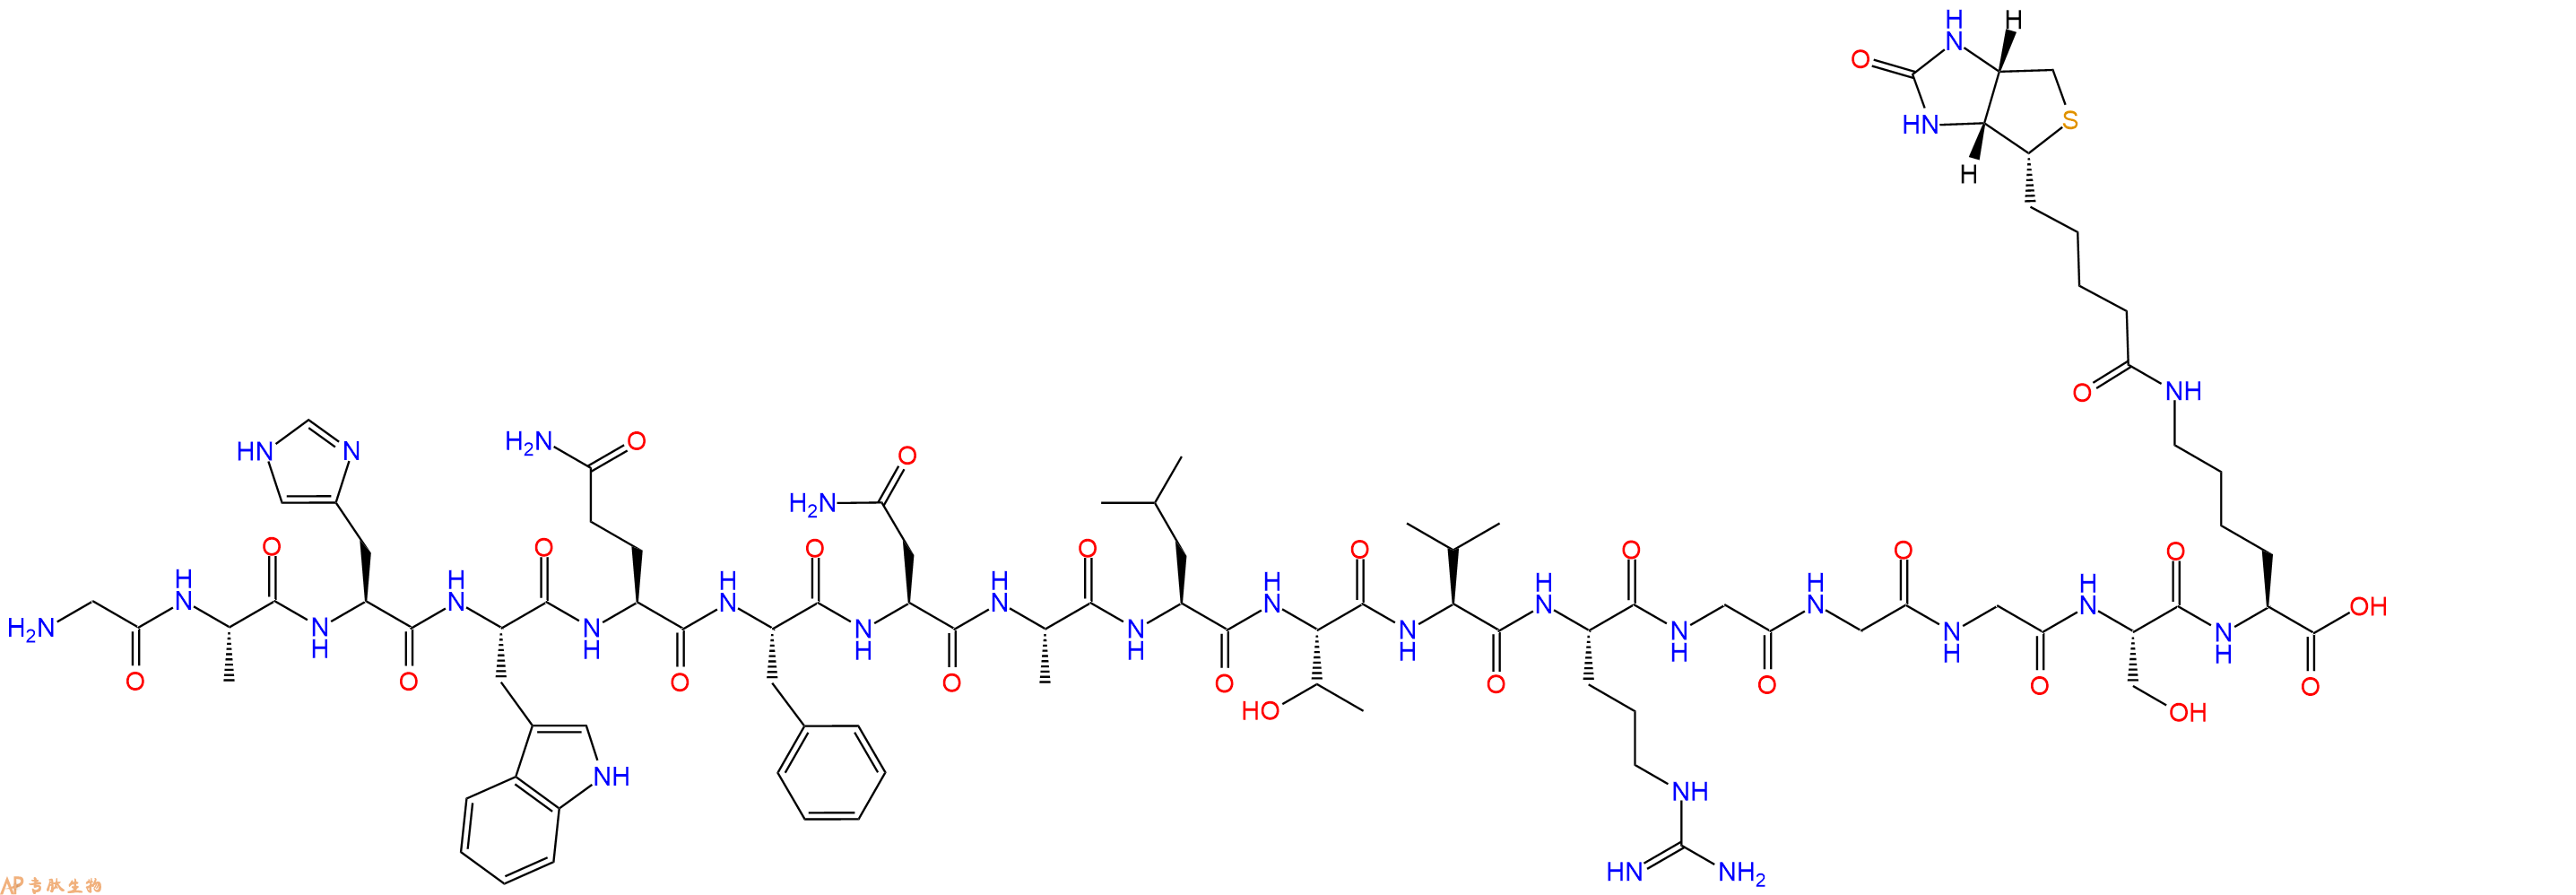 专肽生物产品生物素标记的透明质酸结合肽 Hyaluronan - Binding Peptide biotin labeled